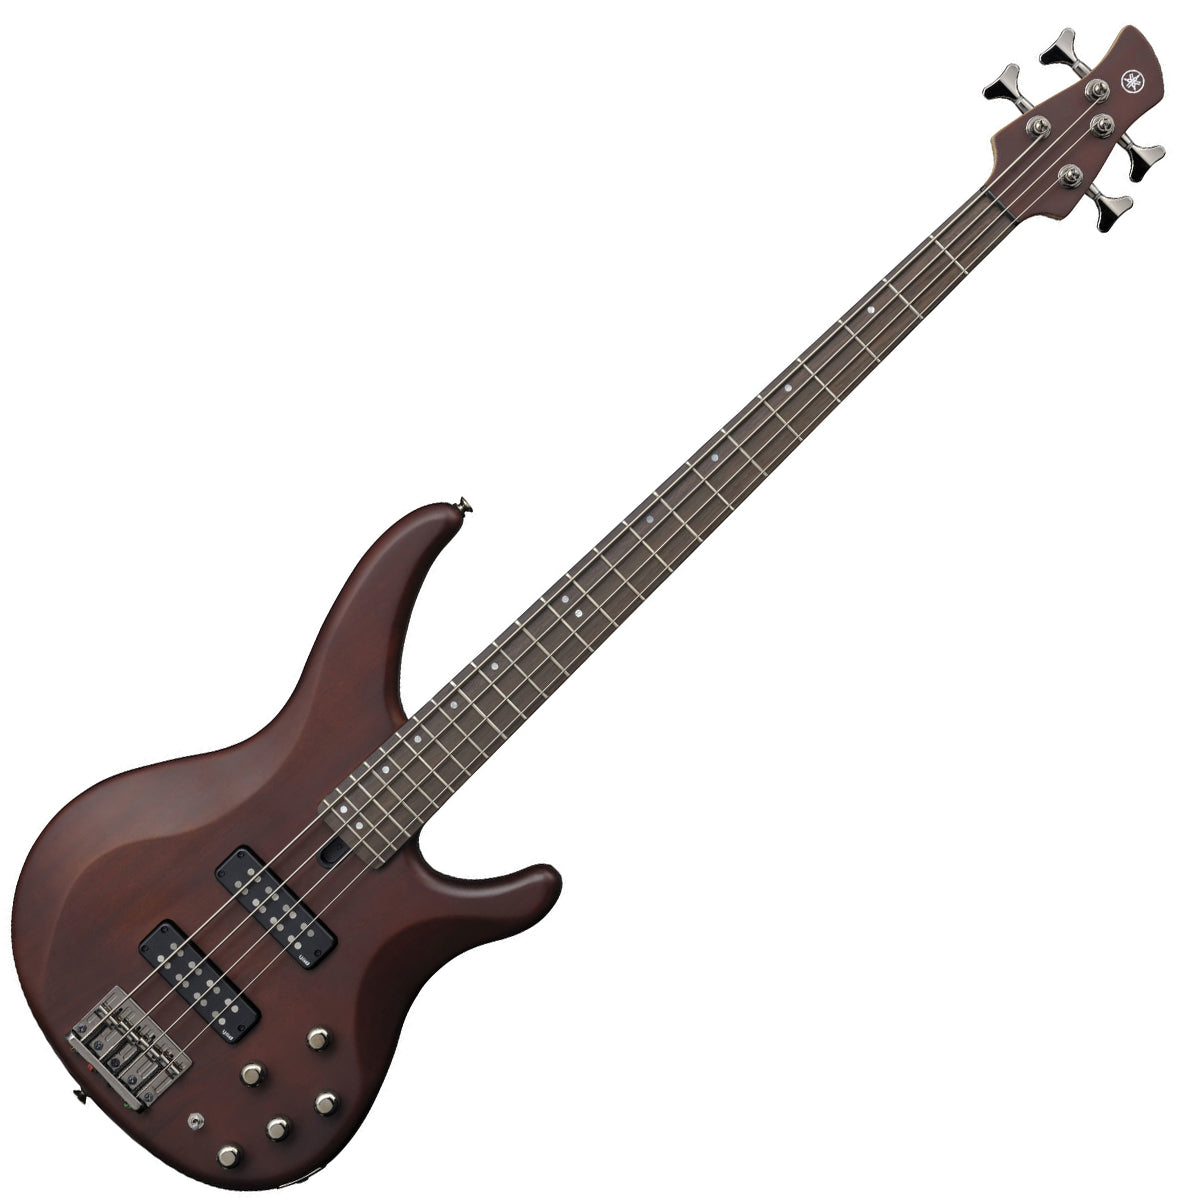 Yamaha TRBX504 Electric Bass Guitar - Translucent Brown